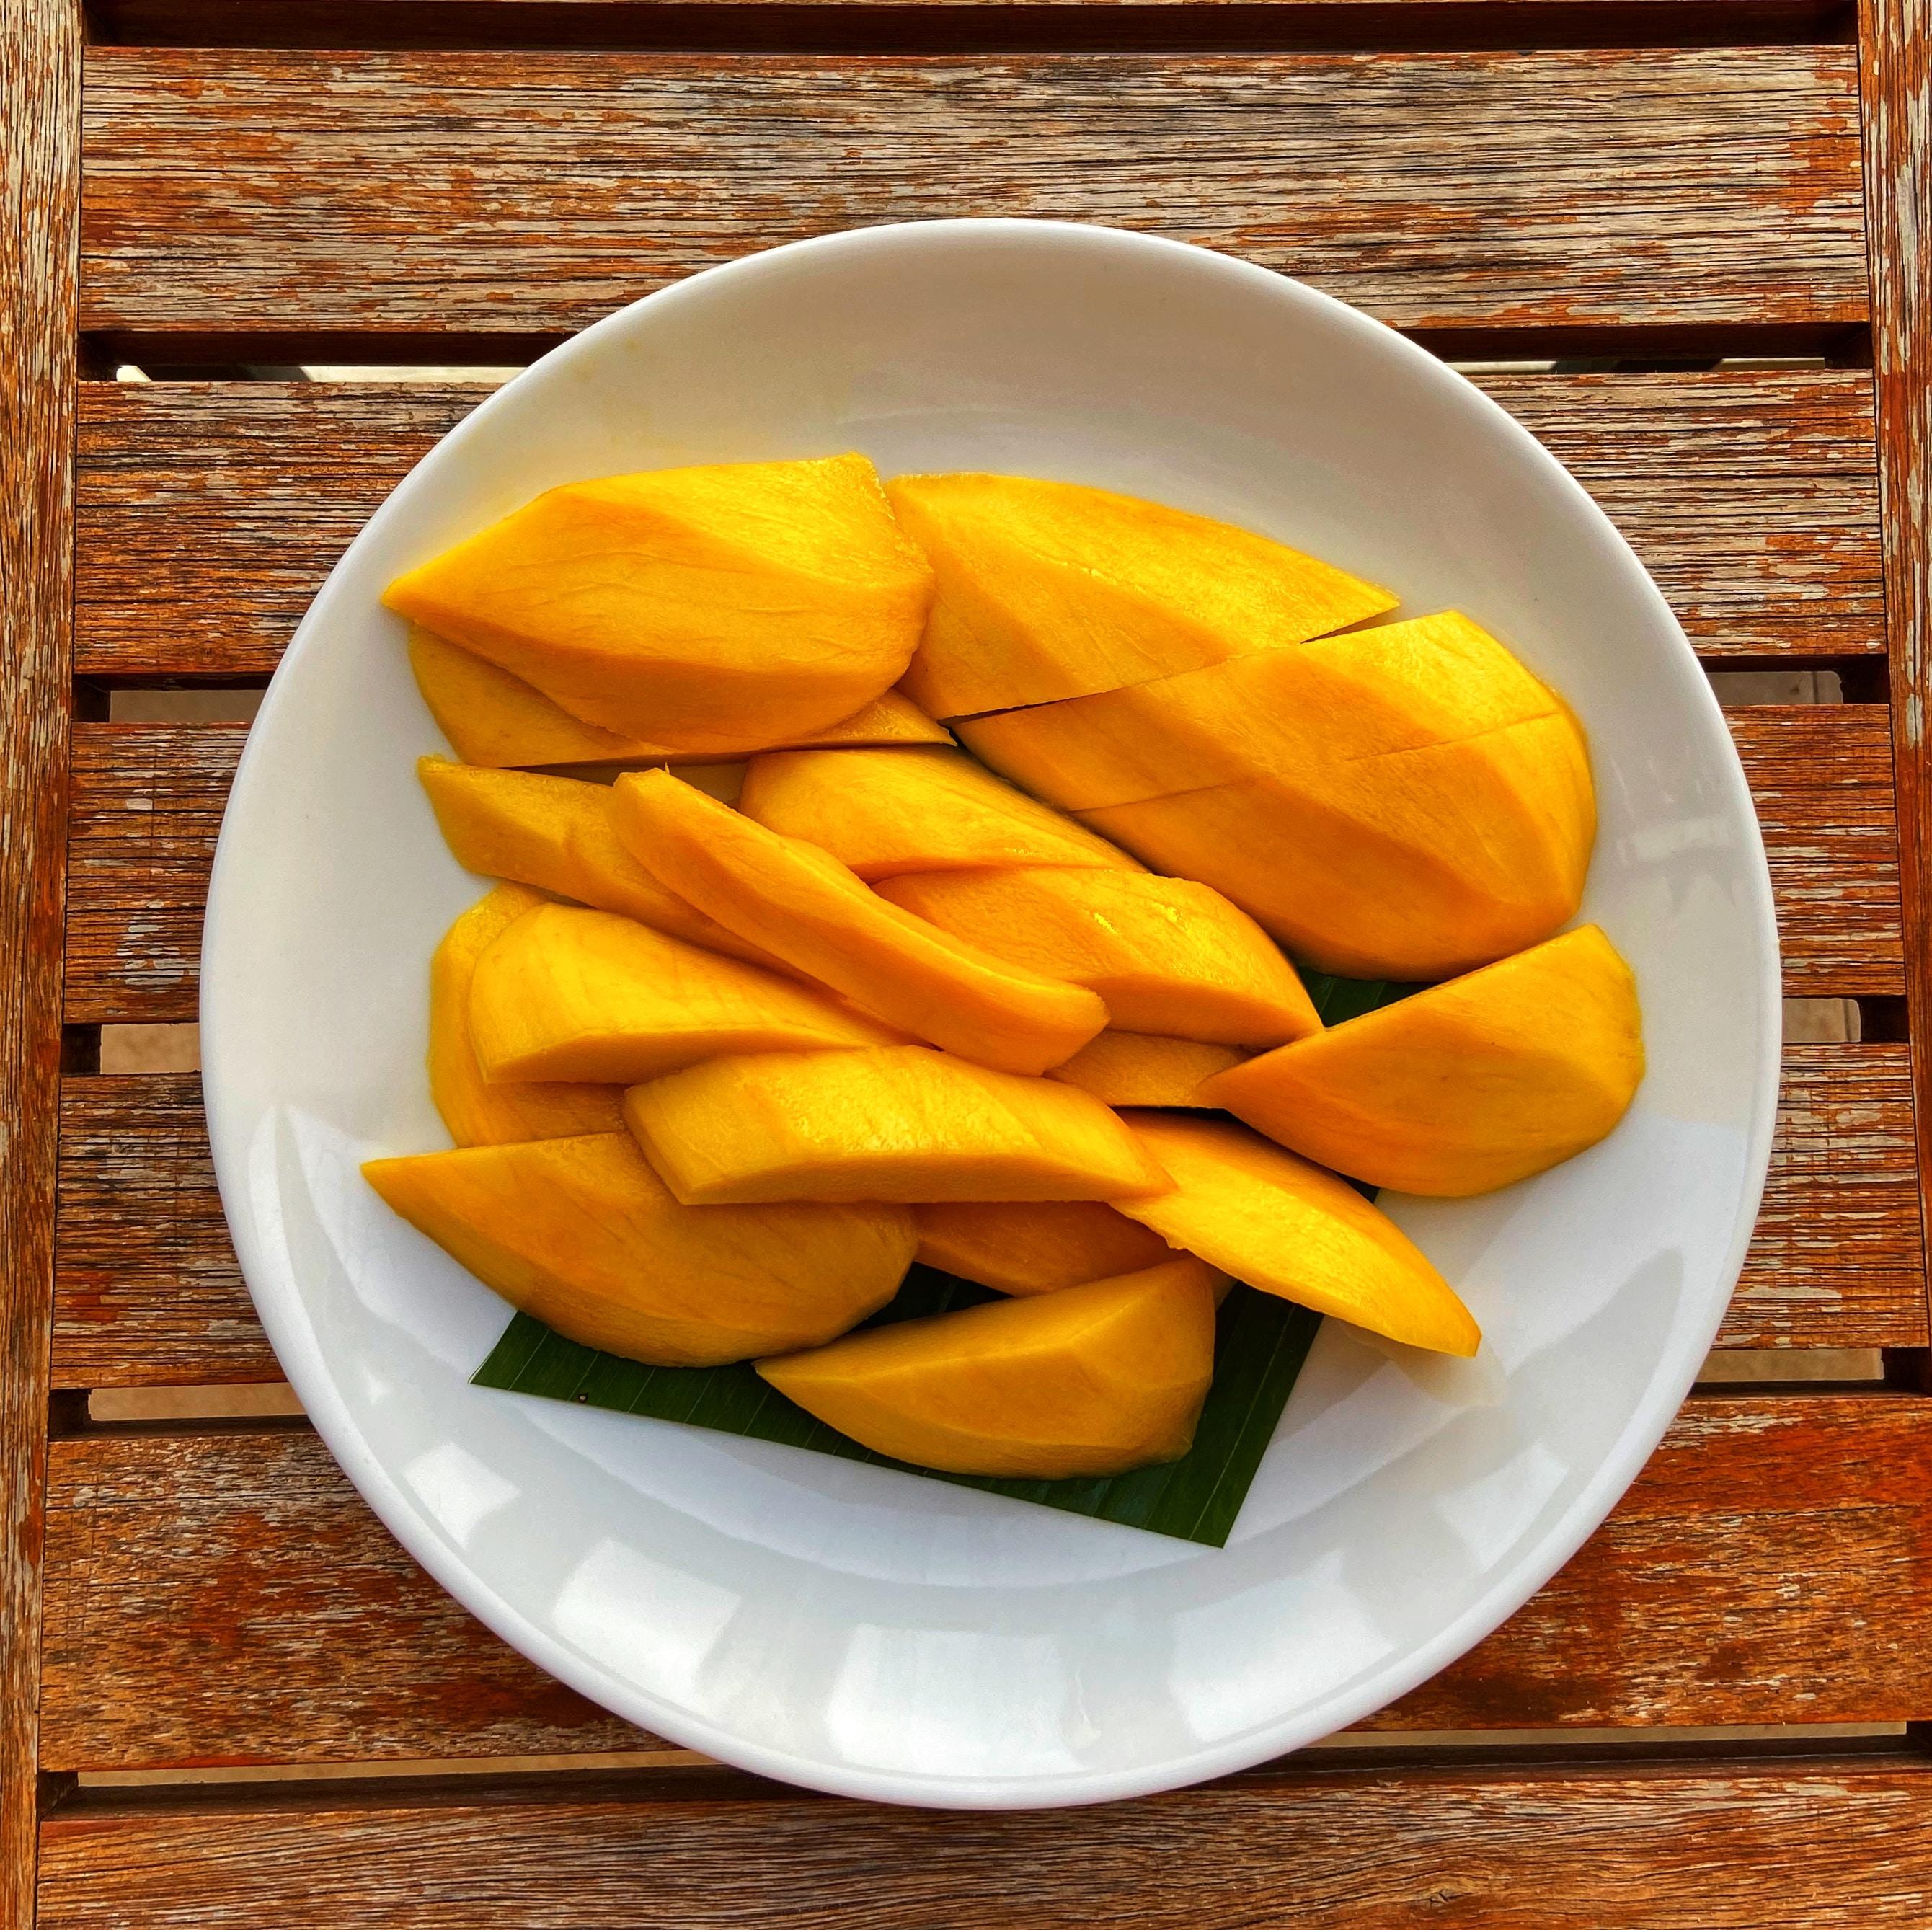 Dlaczego warto jeść mango? Właściwości zdrowotne. Mango owoc - właściwości, witaminy i wartości odżywcze mango. Mango – wartości odżywcze 